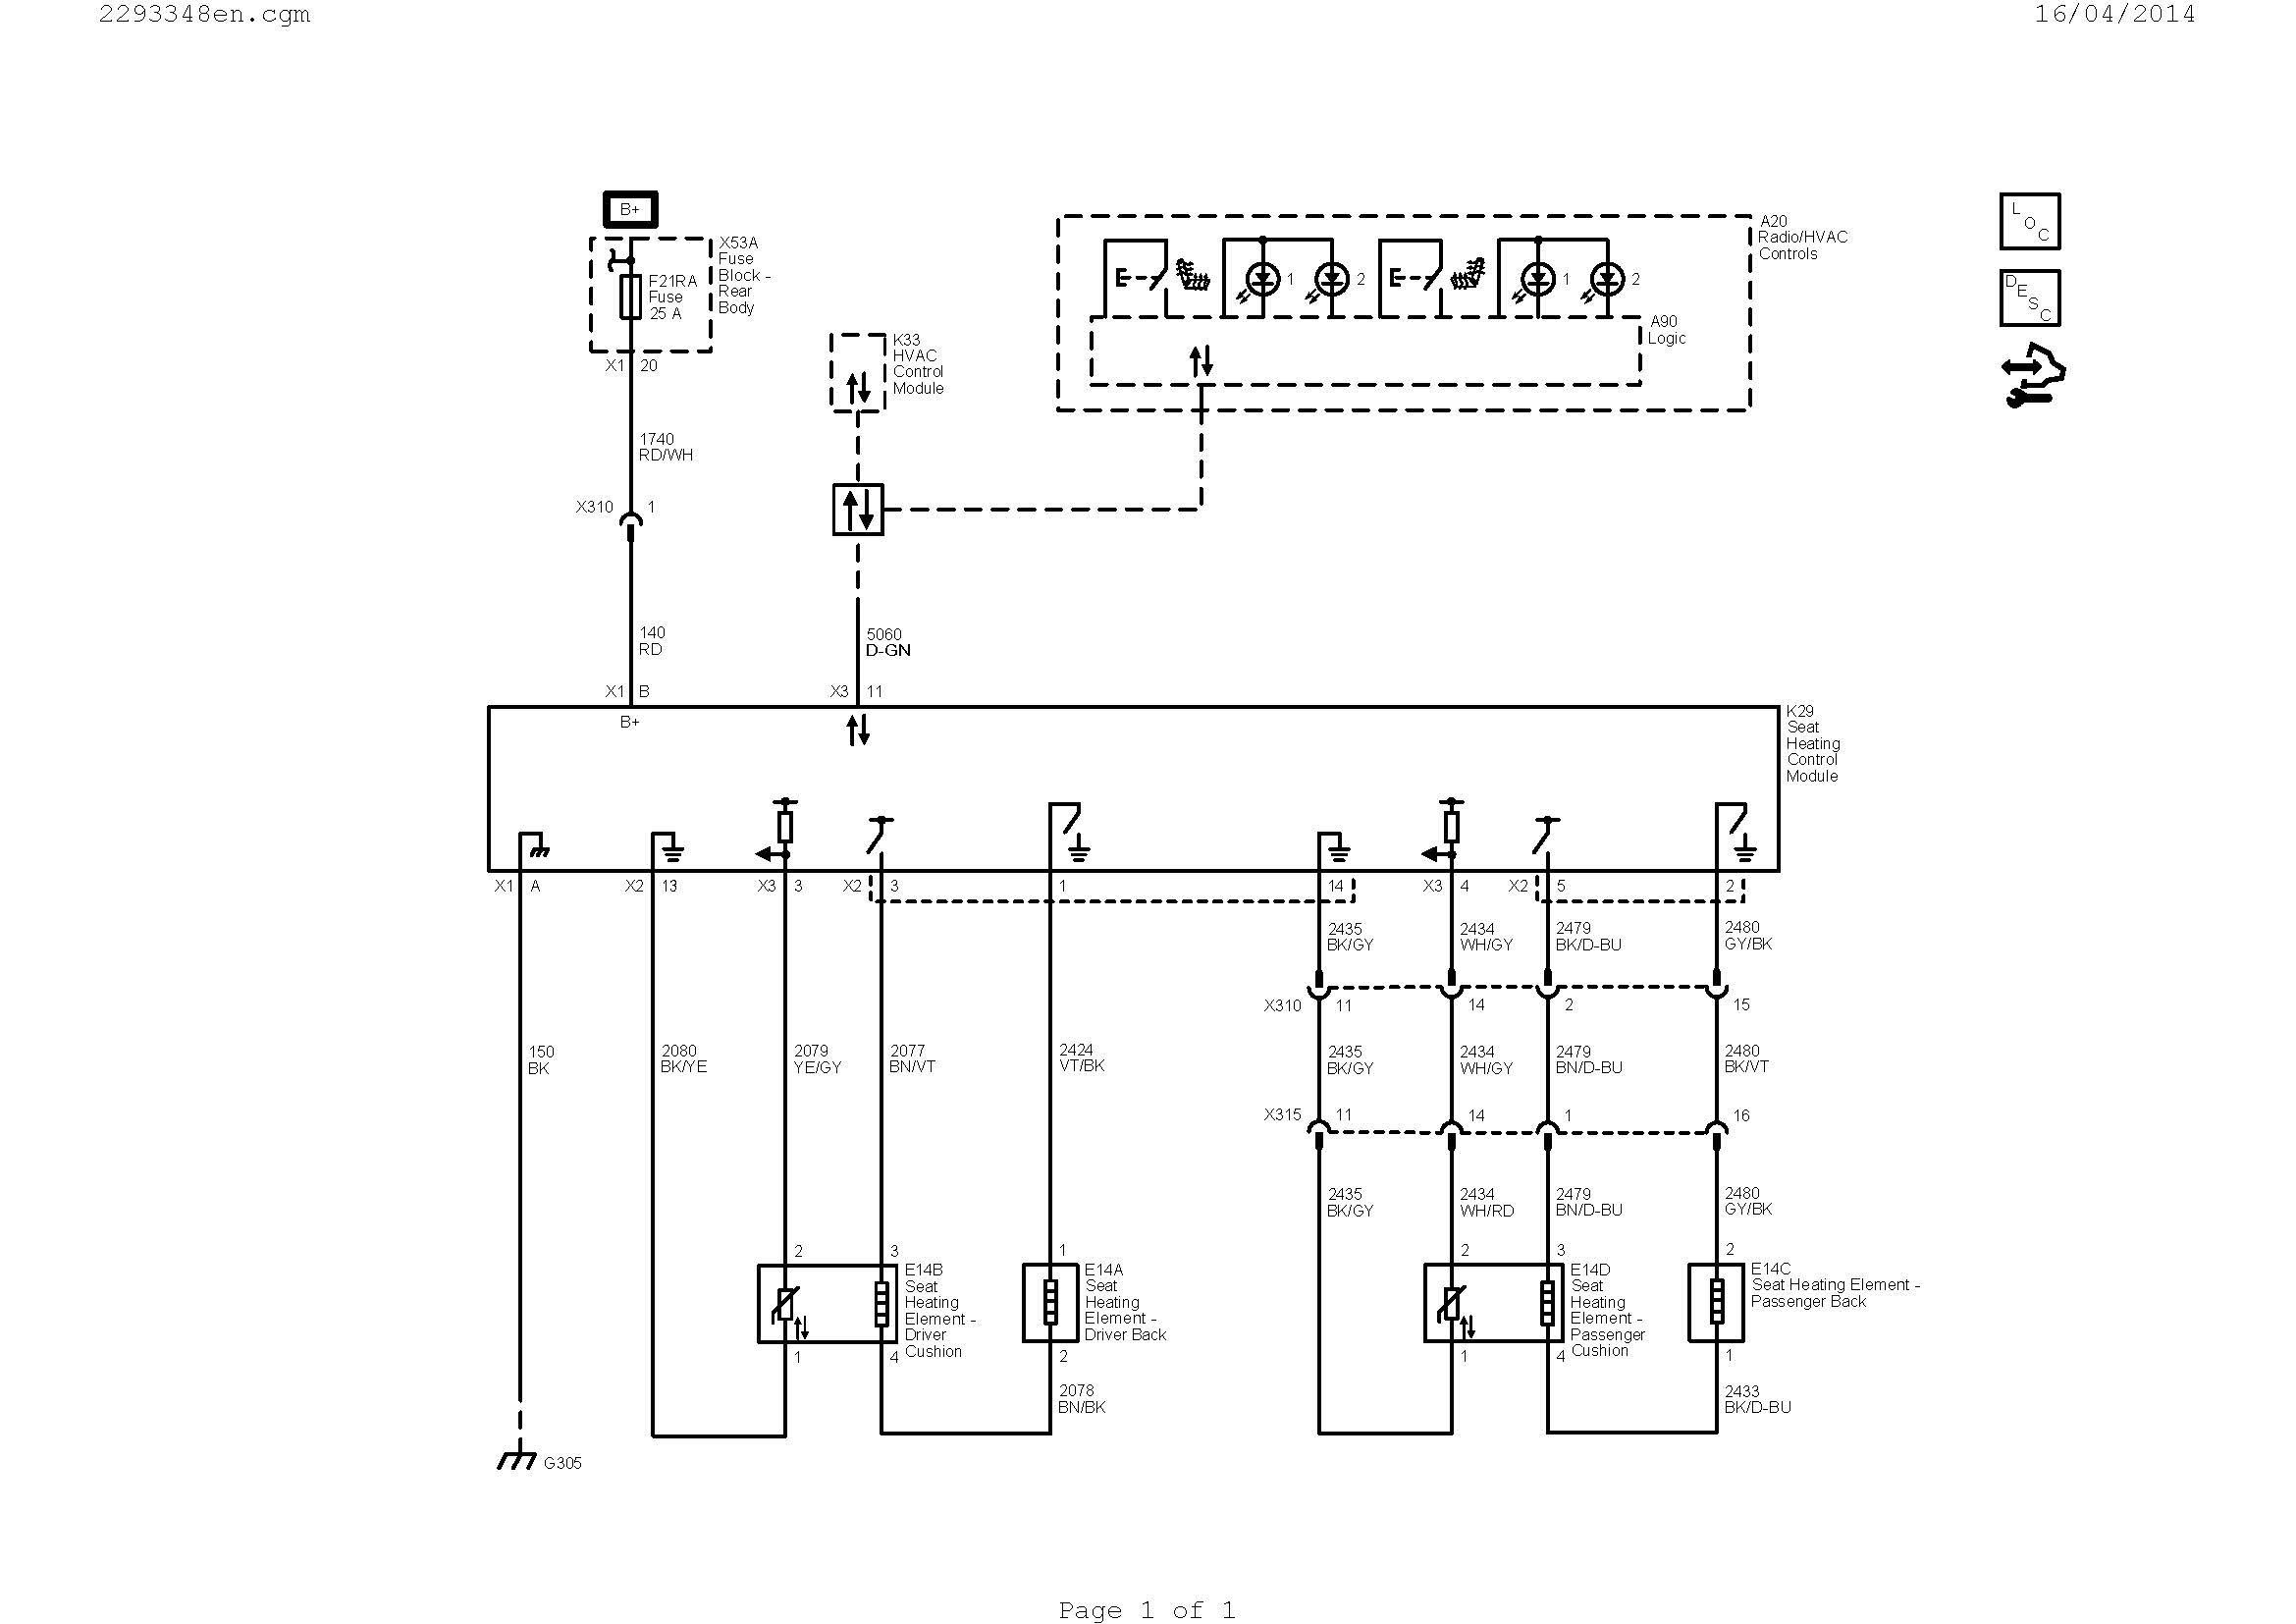 car wiring schematics image wiring diagram rh magnusrosen net HVAC Control Wiring Schematics HVAC Wiring Schematic